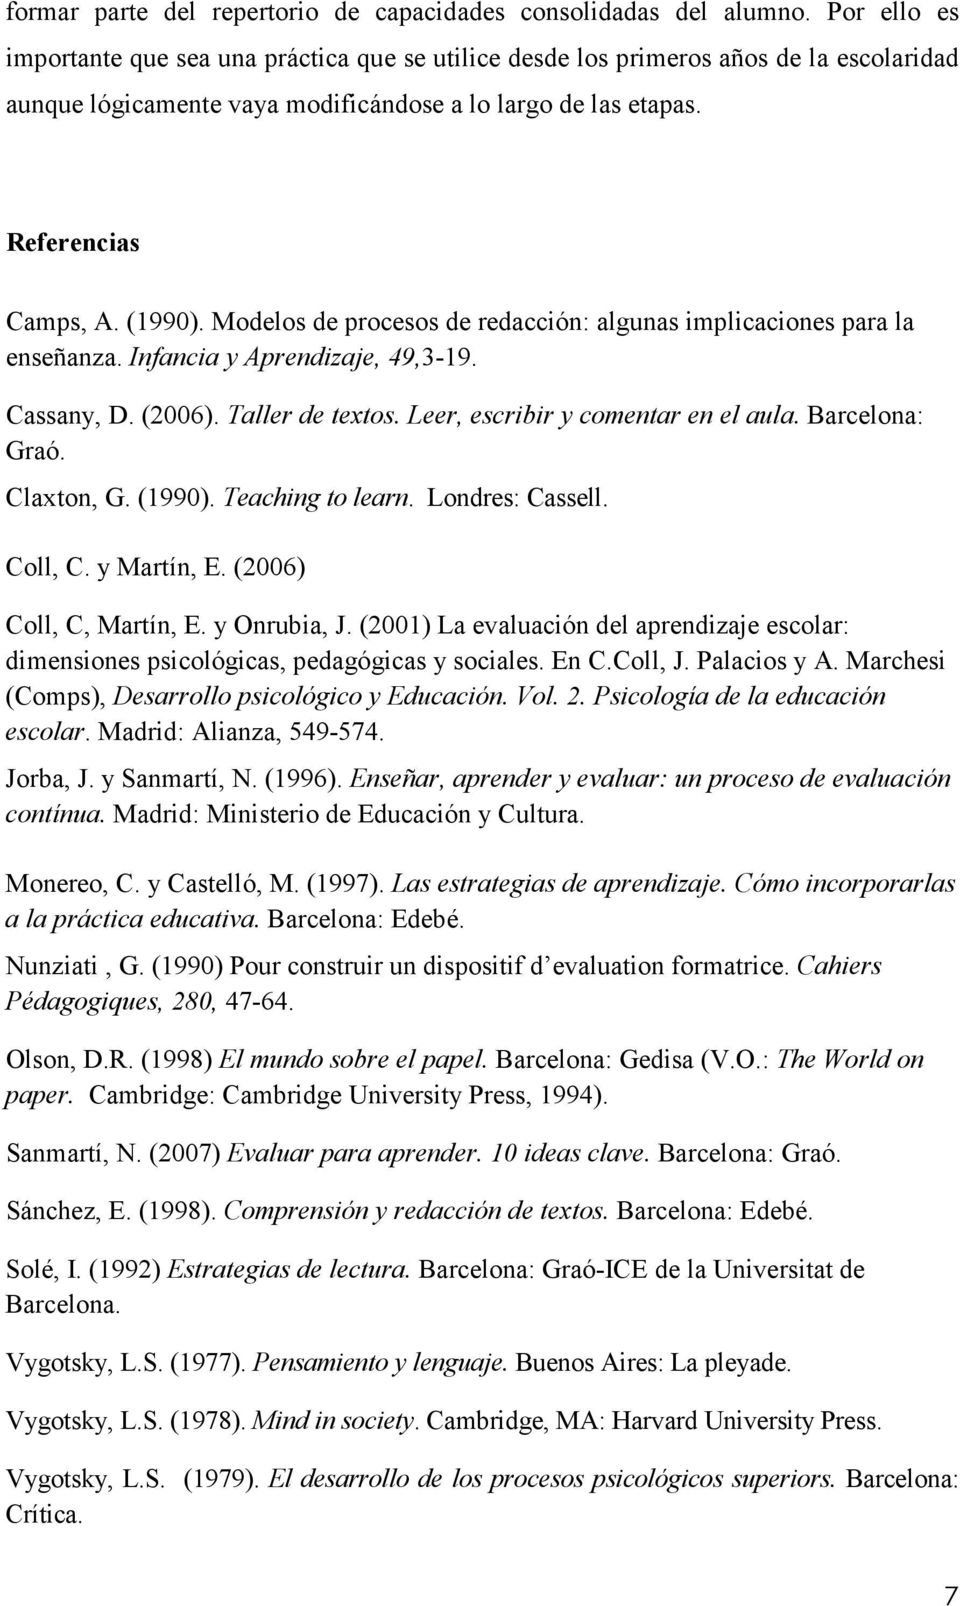 Modelos de procesos de redacción: algunas implicaciones para la enseñanza. Infancia y Aprendizaje, 49,3-19. Cassany, D. (2006). Taller de textos. Leer, escribir y comentar en el aula. Barcelona: Graó.